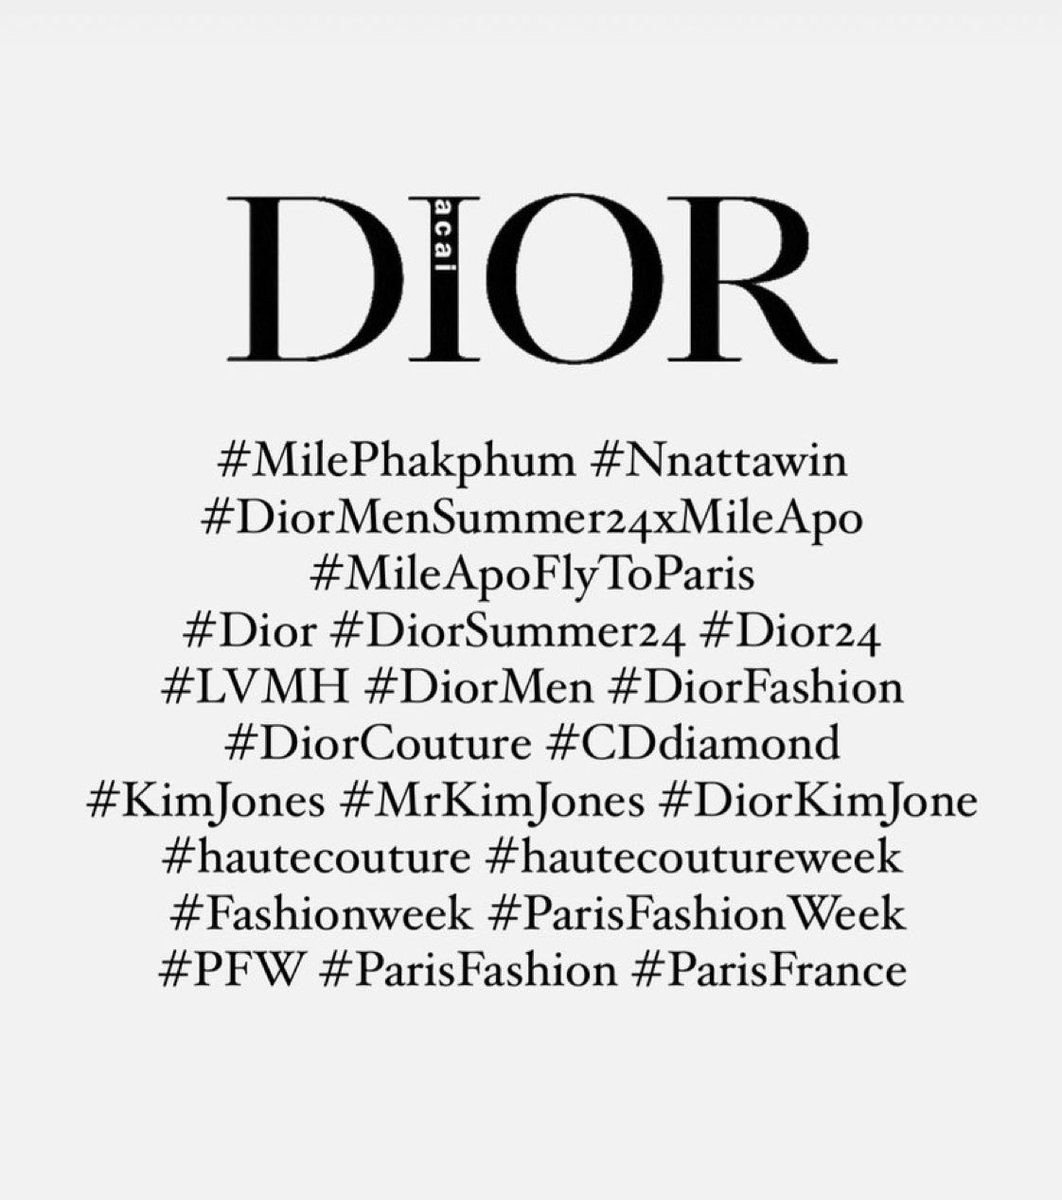 # ในไอจี แปะไว้ 📌
#MilePhakphum #Nnattawin #.DiorMenSummer24xMileApo #MileApoFlyToParis #Dior #DiorSummer24 #Dior24 #LVMH #DiorMen #DiorFashion #DiorCouture #CDdiamond #KimJones #MrKimJones #DiorKimJone
#hautecouture #hautecoutureweek #Fashionweek #ParisFashionWeek #PFW